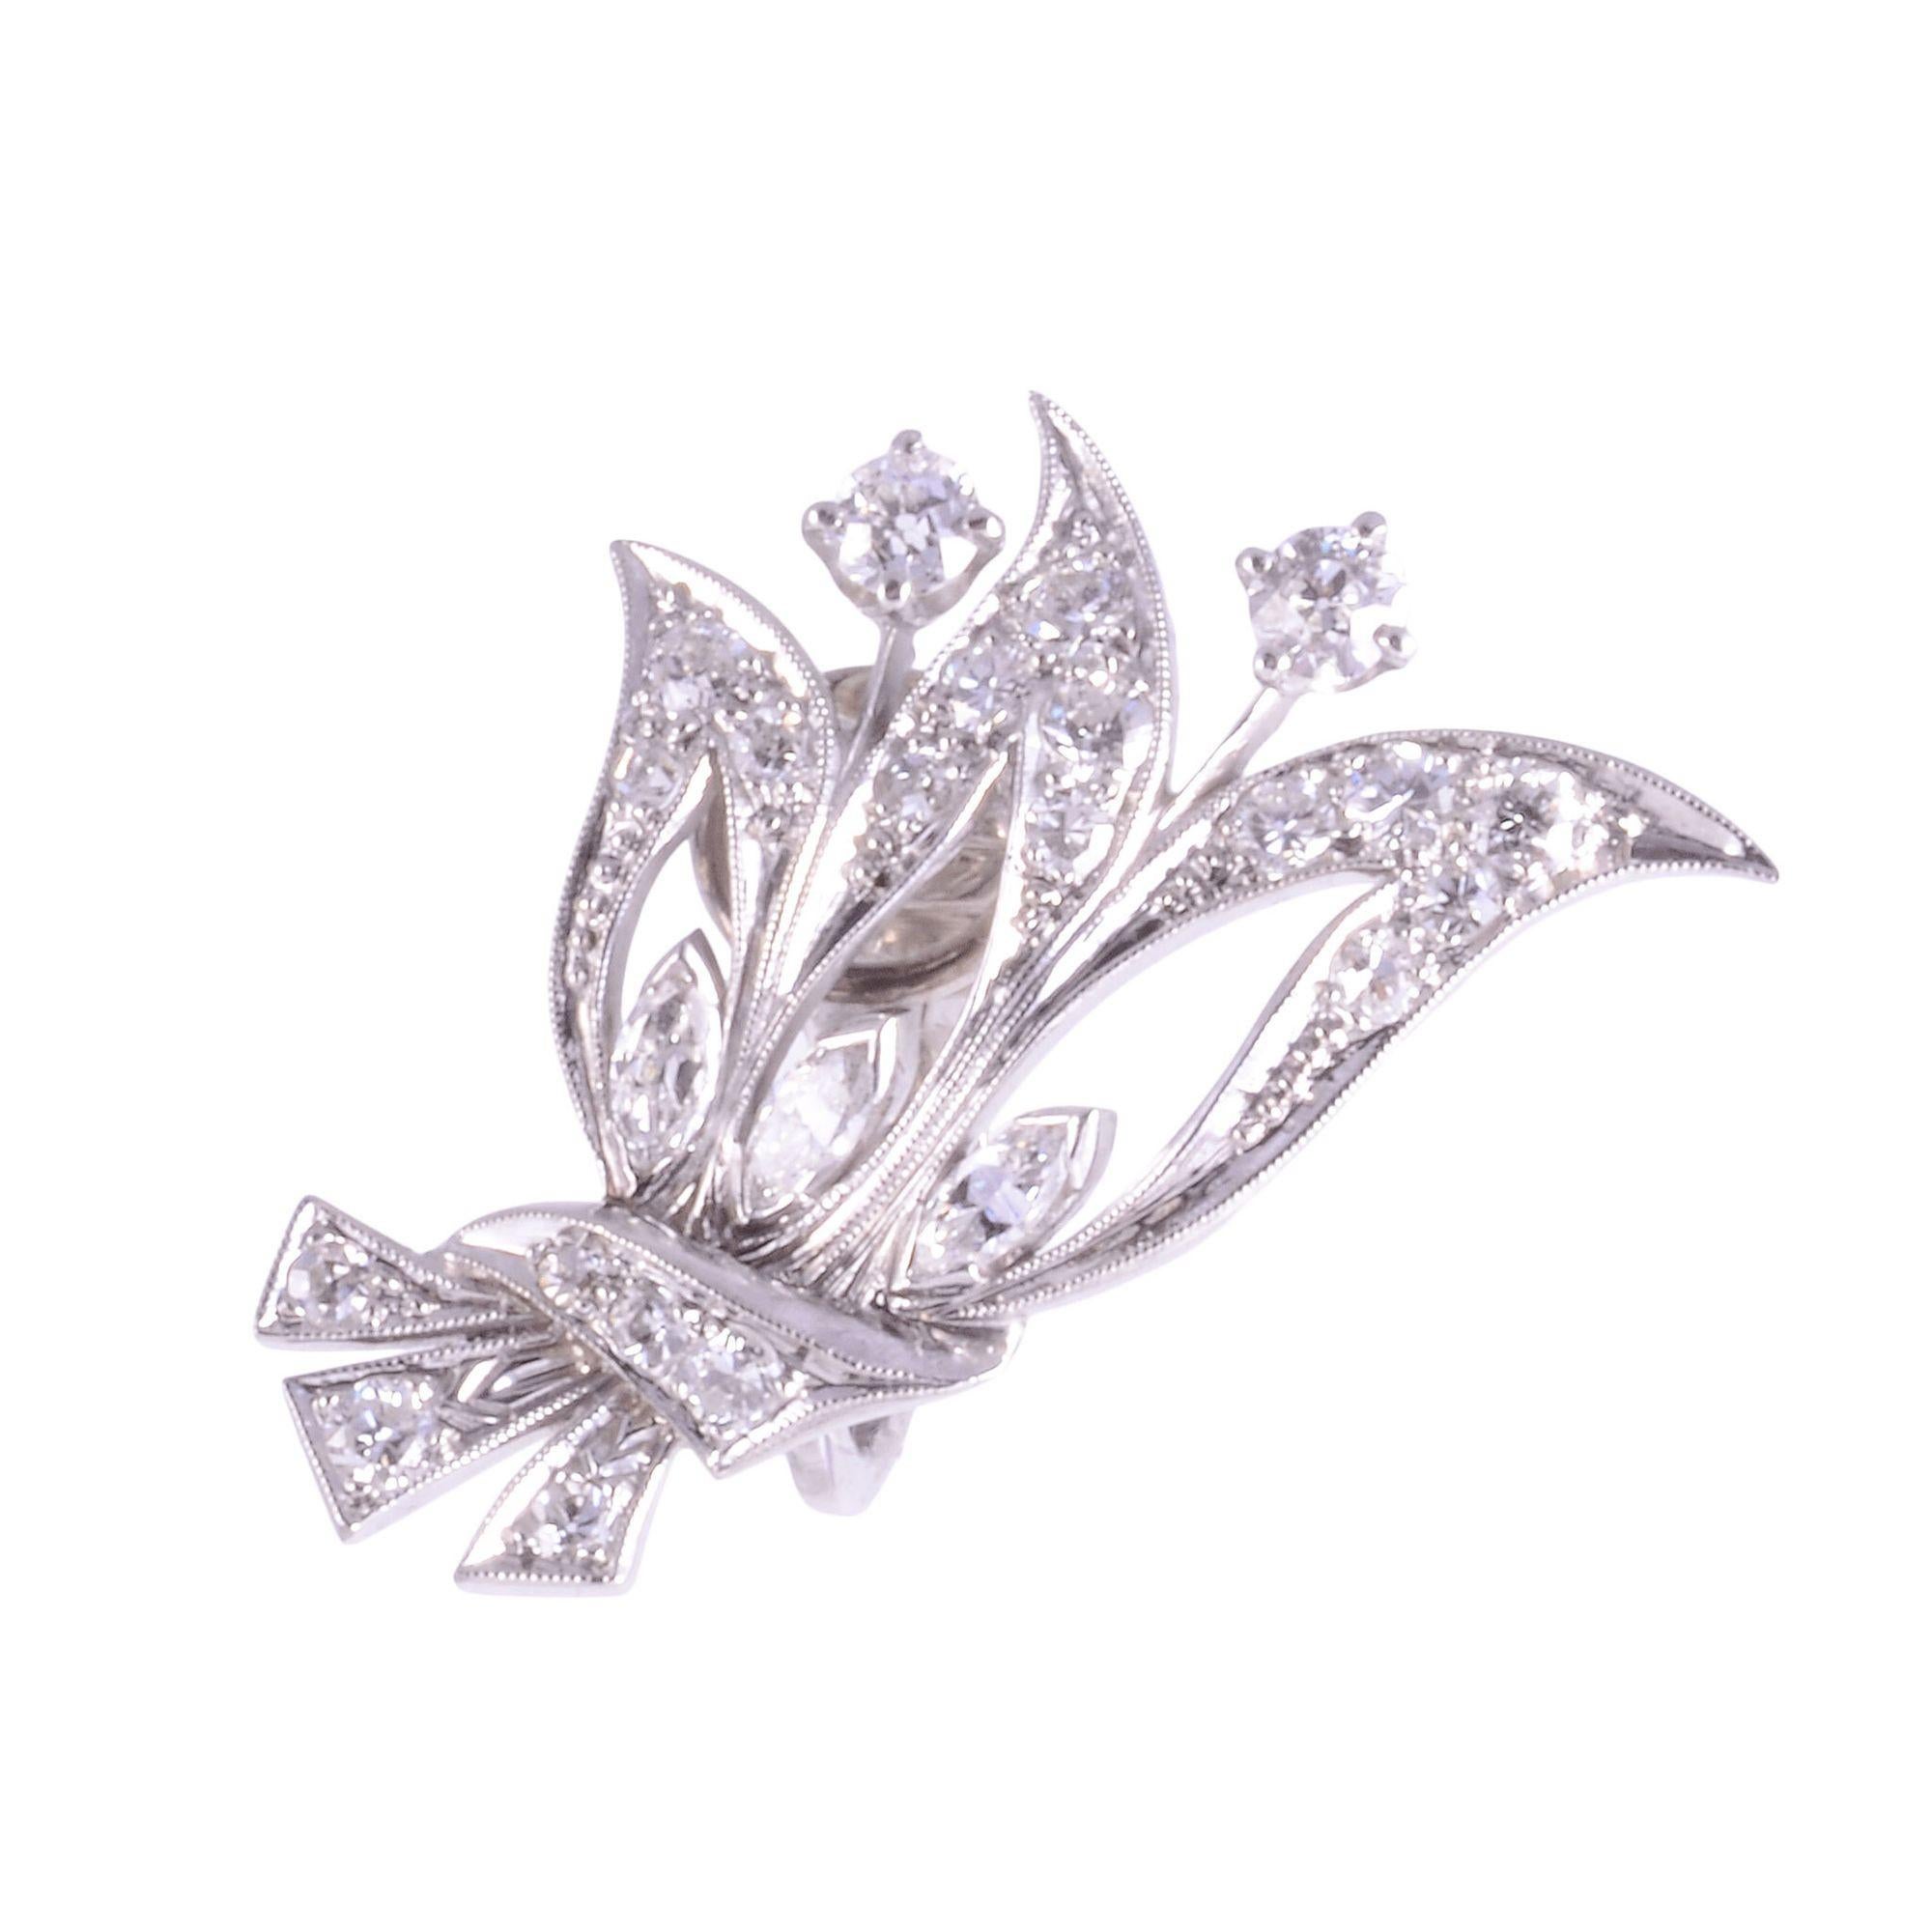 Vintage VS Diamant-Palladium-Ohrringe, um 1940. Diese Palladium-Ohrringe sind mit runden Diamanten im Brillant- und Marquise-Schliff mit einem Gesamtgewicht von 1,80 Karat besetzt. Die Diamanten haben die Reinheit VS und die Farbe E-F. Diese